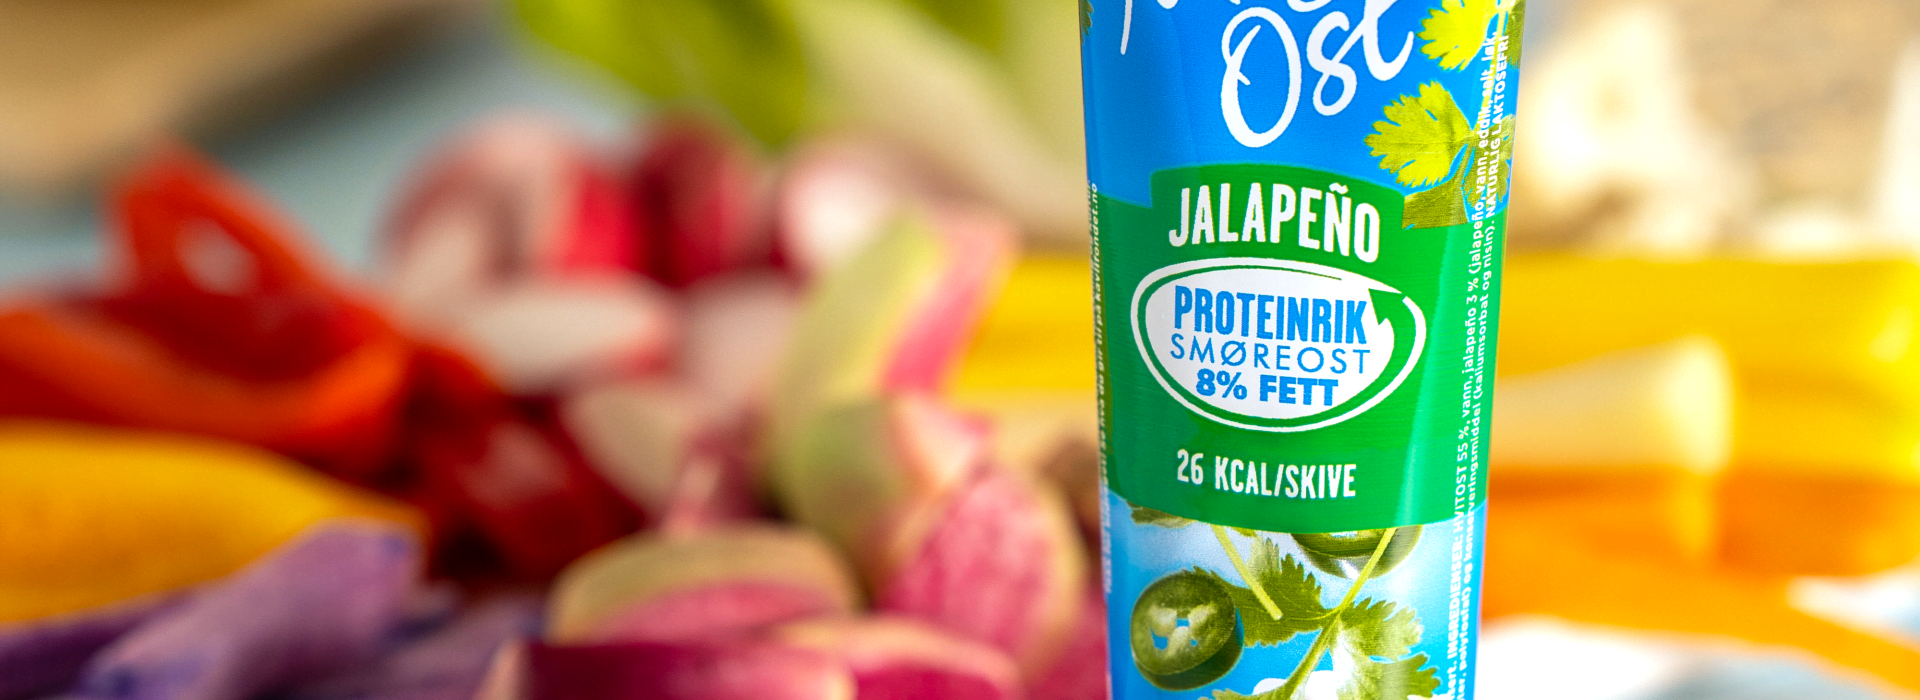 MagerOst Jalapeño gjør seg ypperlig i dipp til det fargerike grønnsaksfatet!